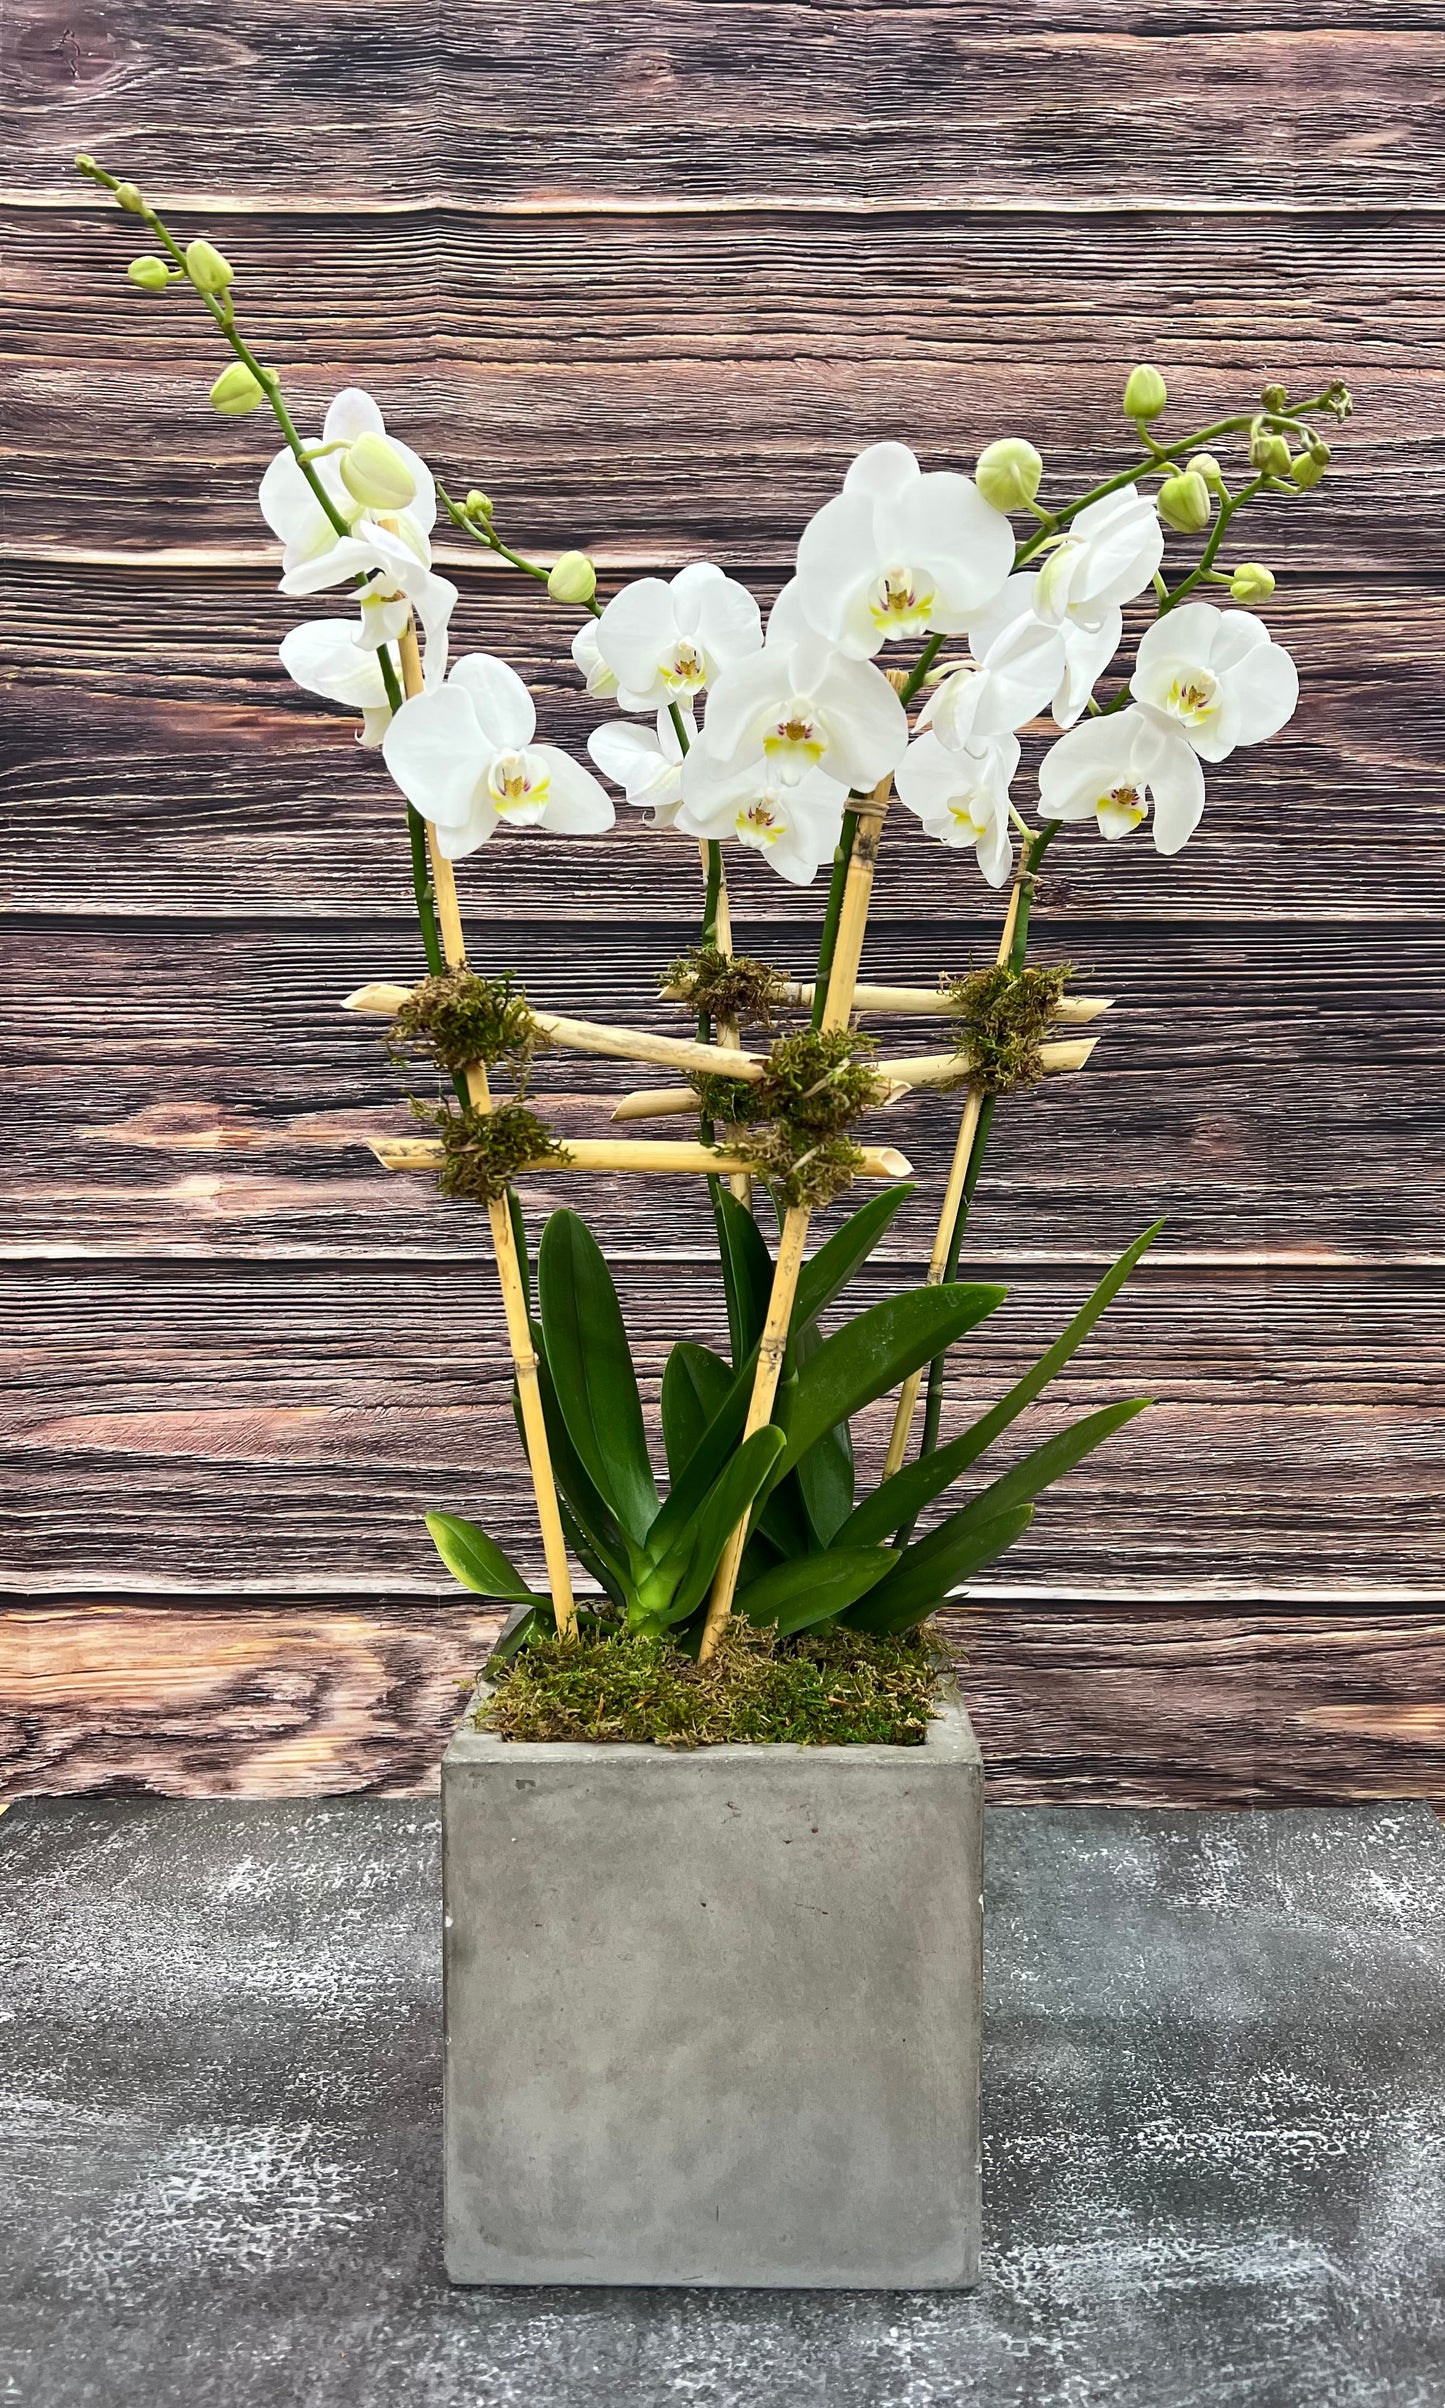 The Orchid arrangement